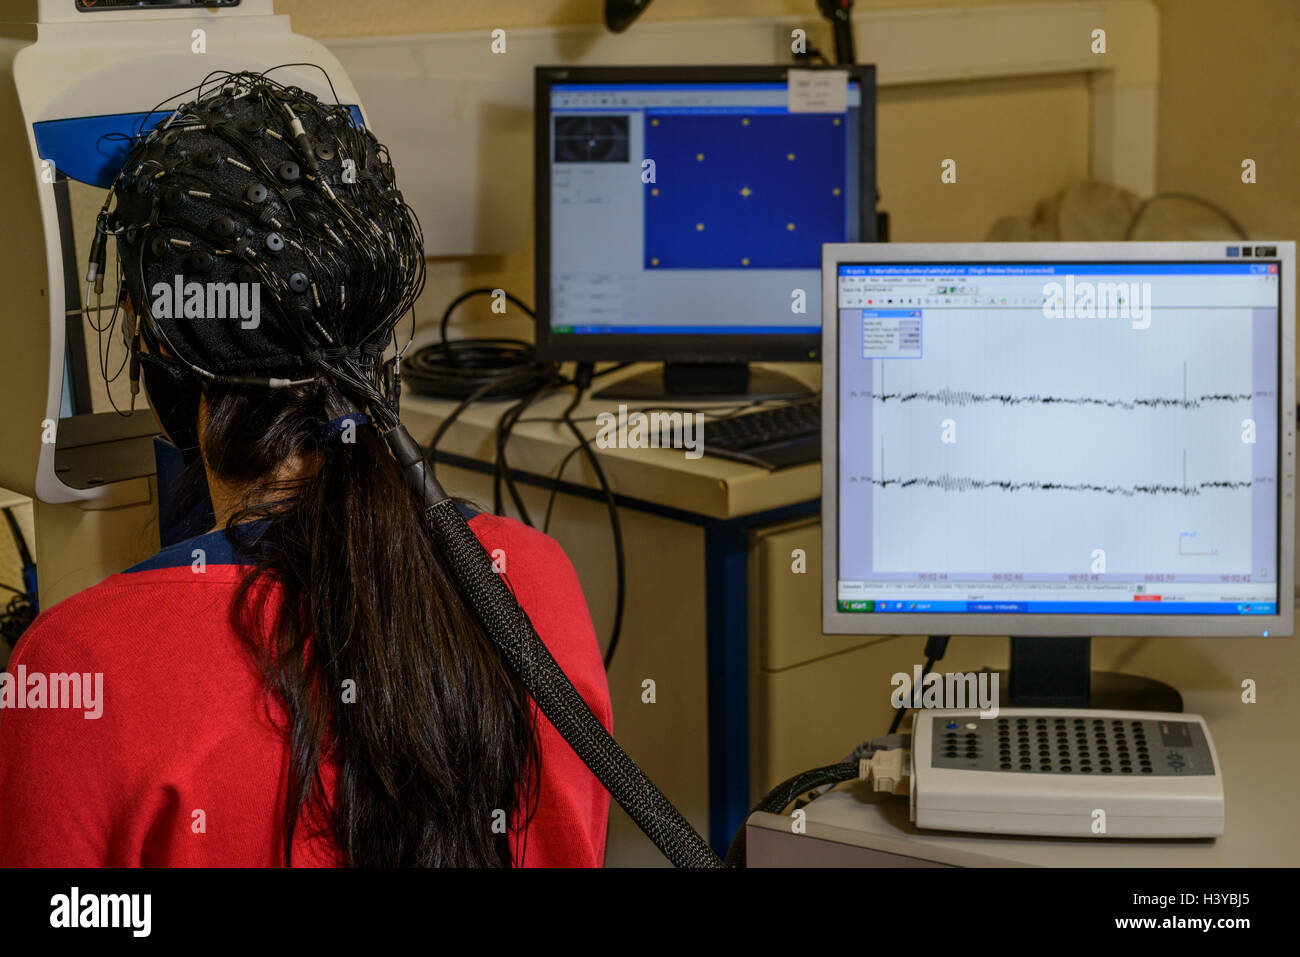 Personne qui subit un électroencéphalogramme EEG avec un bouchon pour numériser son activité électrique du cerveau Banque D'Images